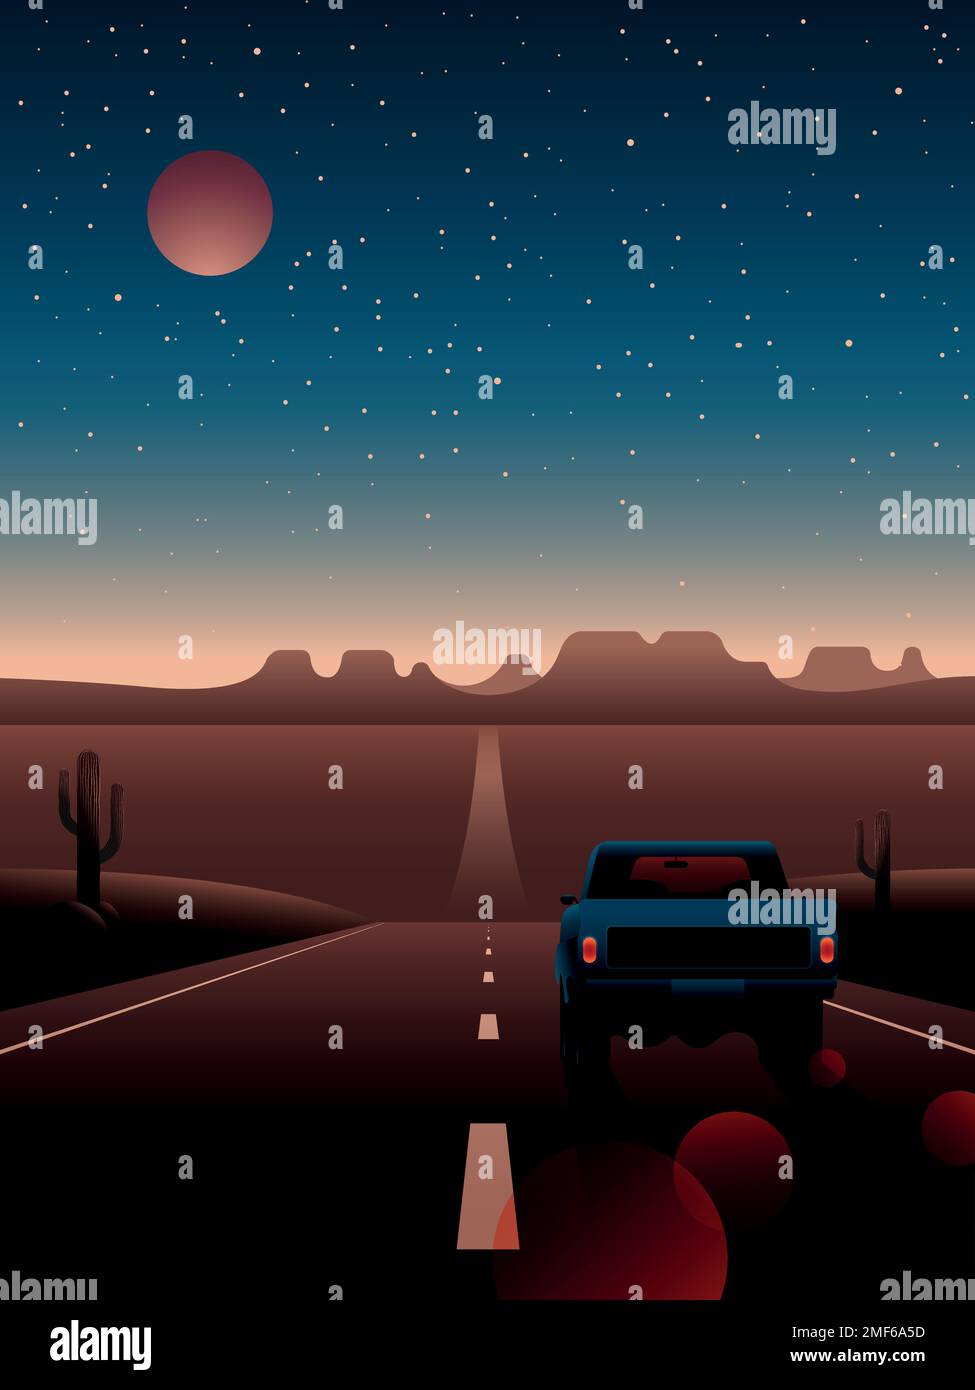 Pickup-Truck fährt auf einer Wüstenautobahn. Nachtlandschaft der Wüste und das Auto vor dem Hintergrund der Berge, Sterne und des Mondes. Stock Vektor